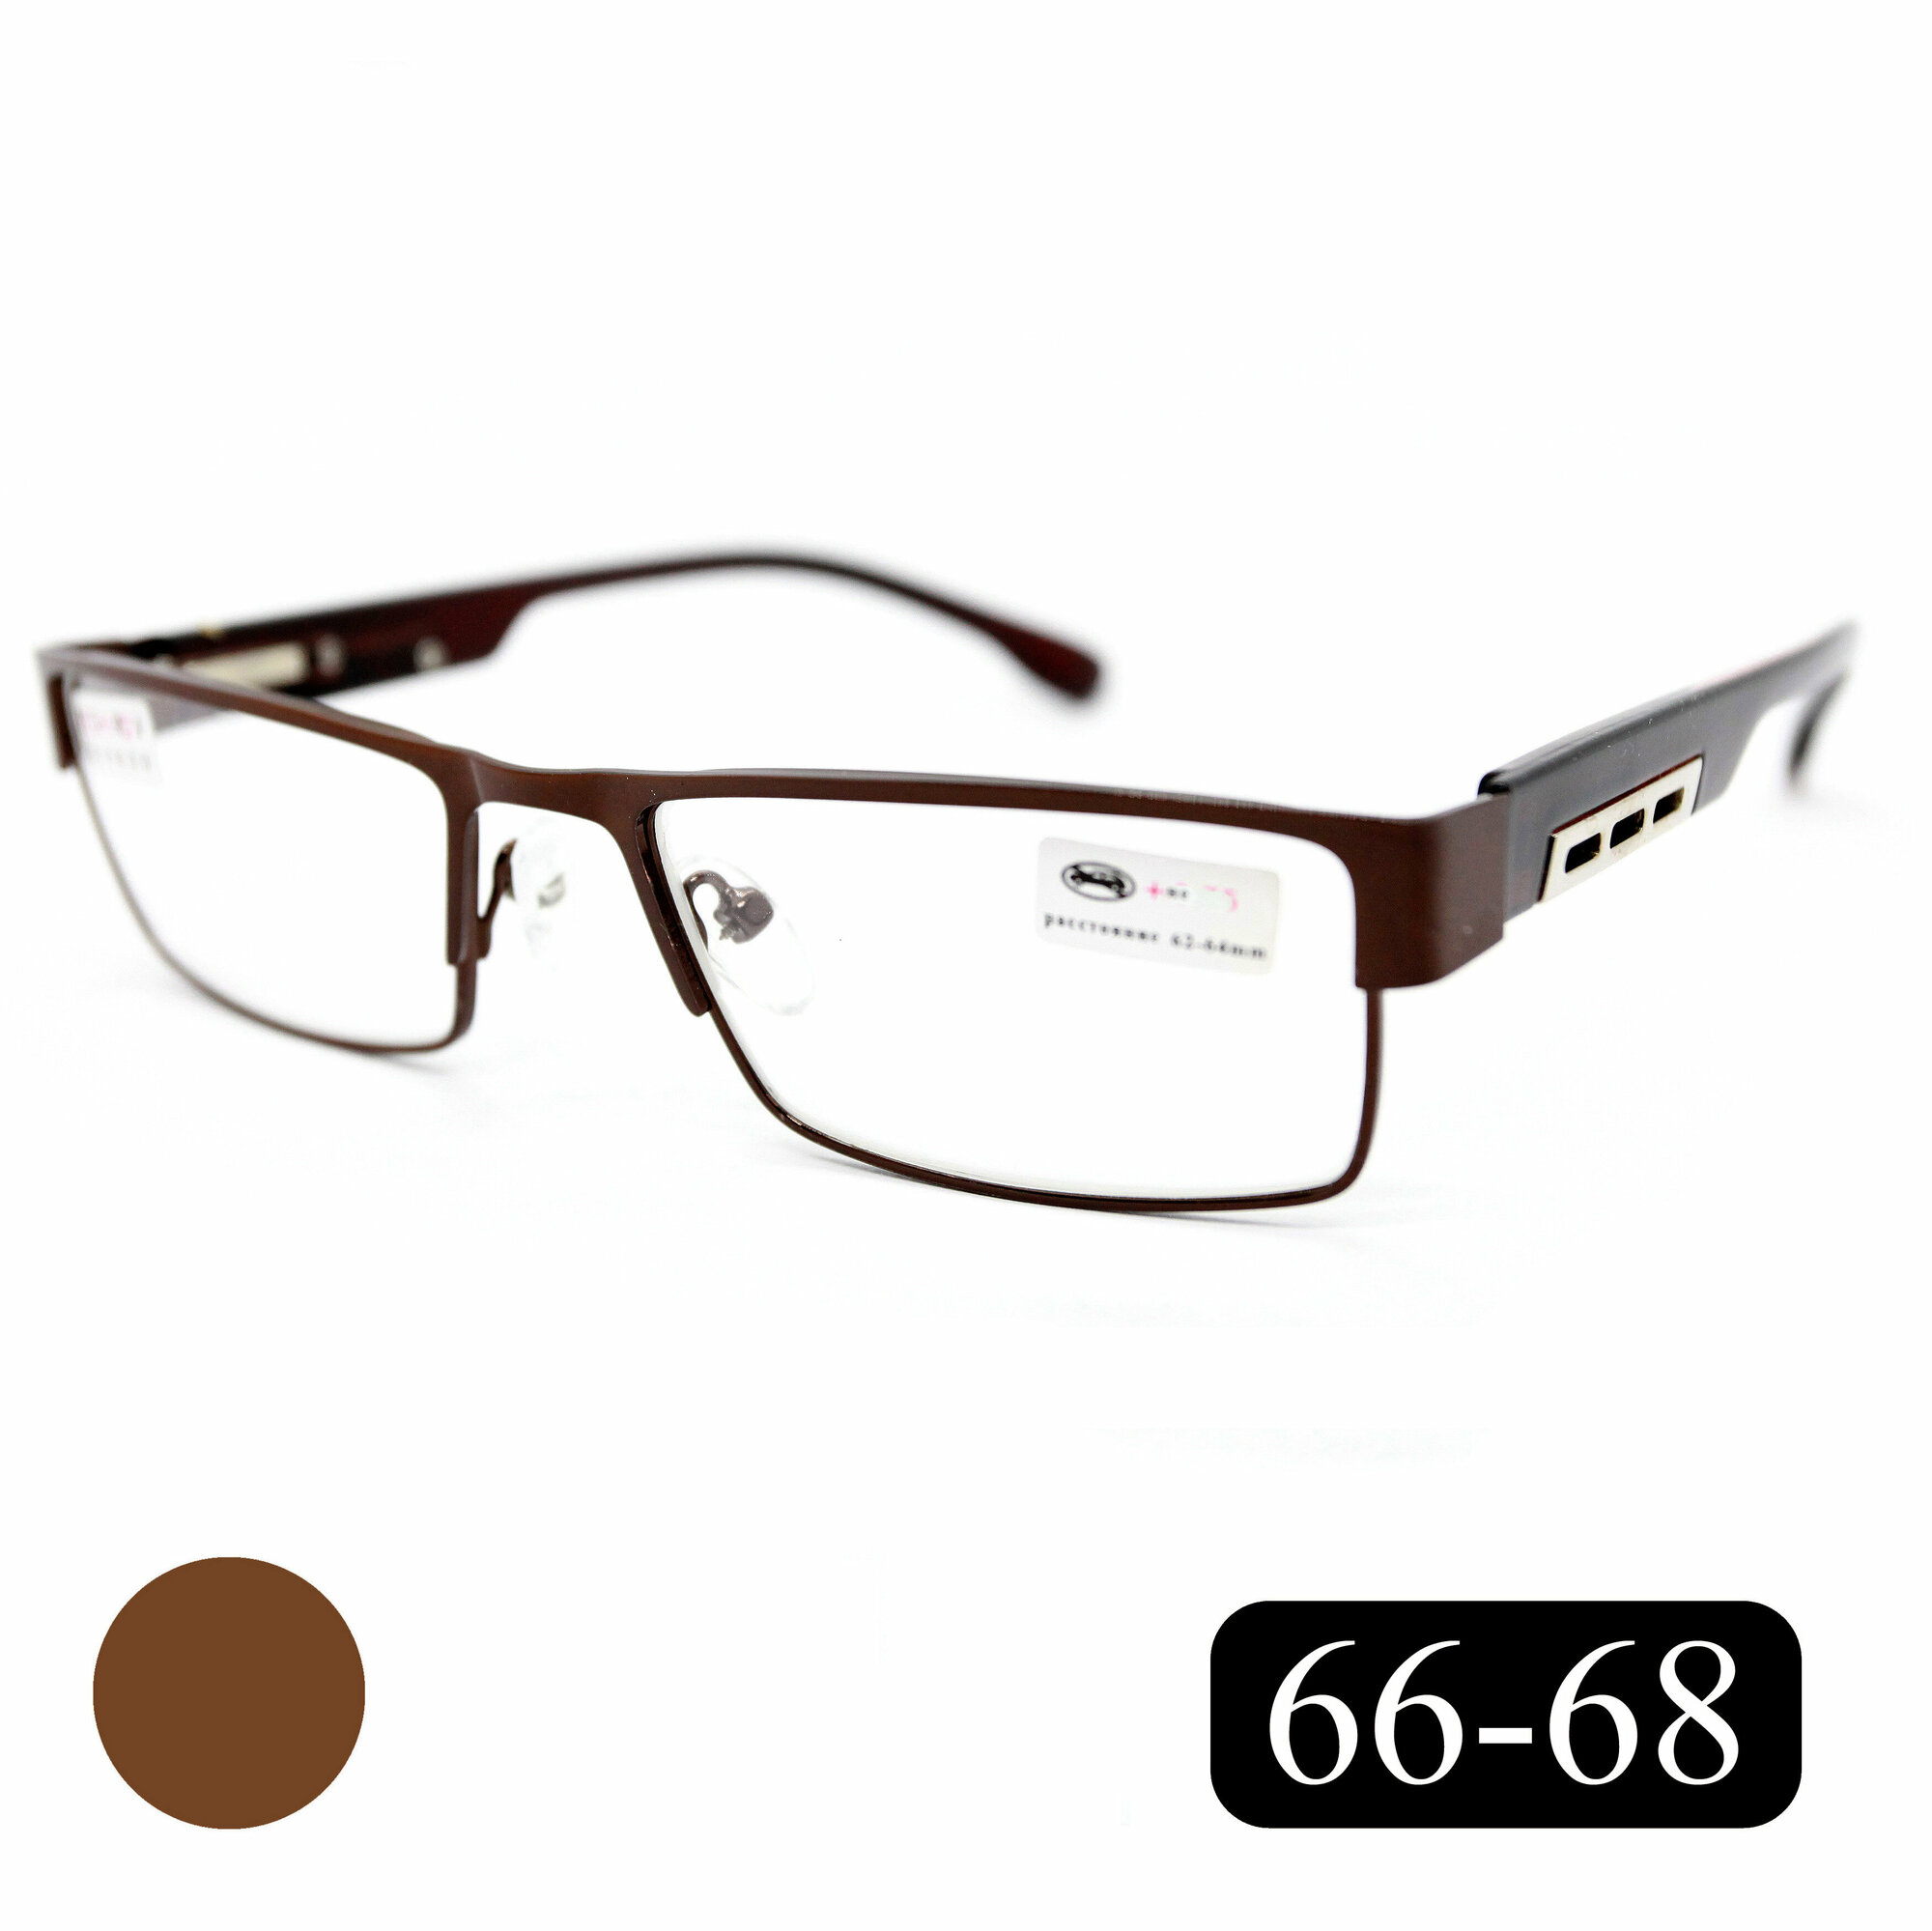 Готовые очки для чтения РЦ 66-68 с диоптриями (+3.50) мост 019-M1 без футляра цвет коричневый линзы пластик РЦ 66-68